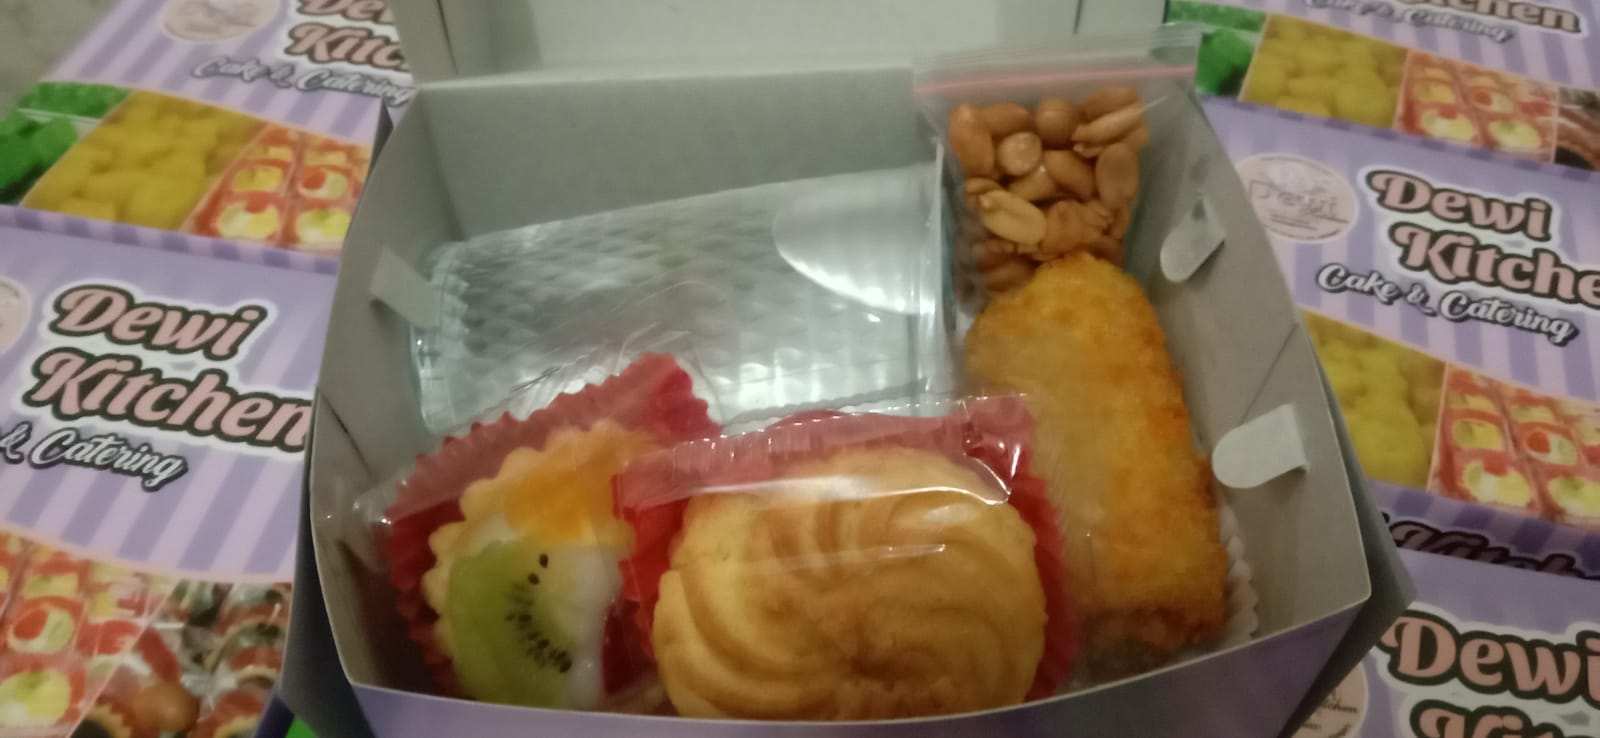 Dewi - Snack Box